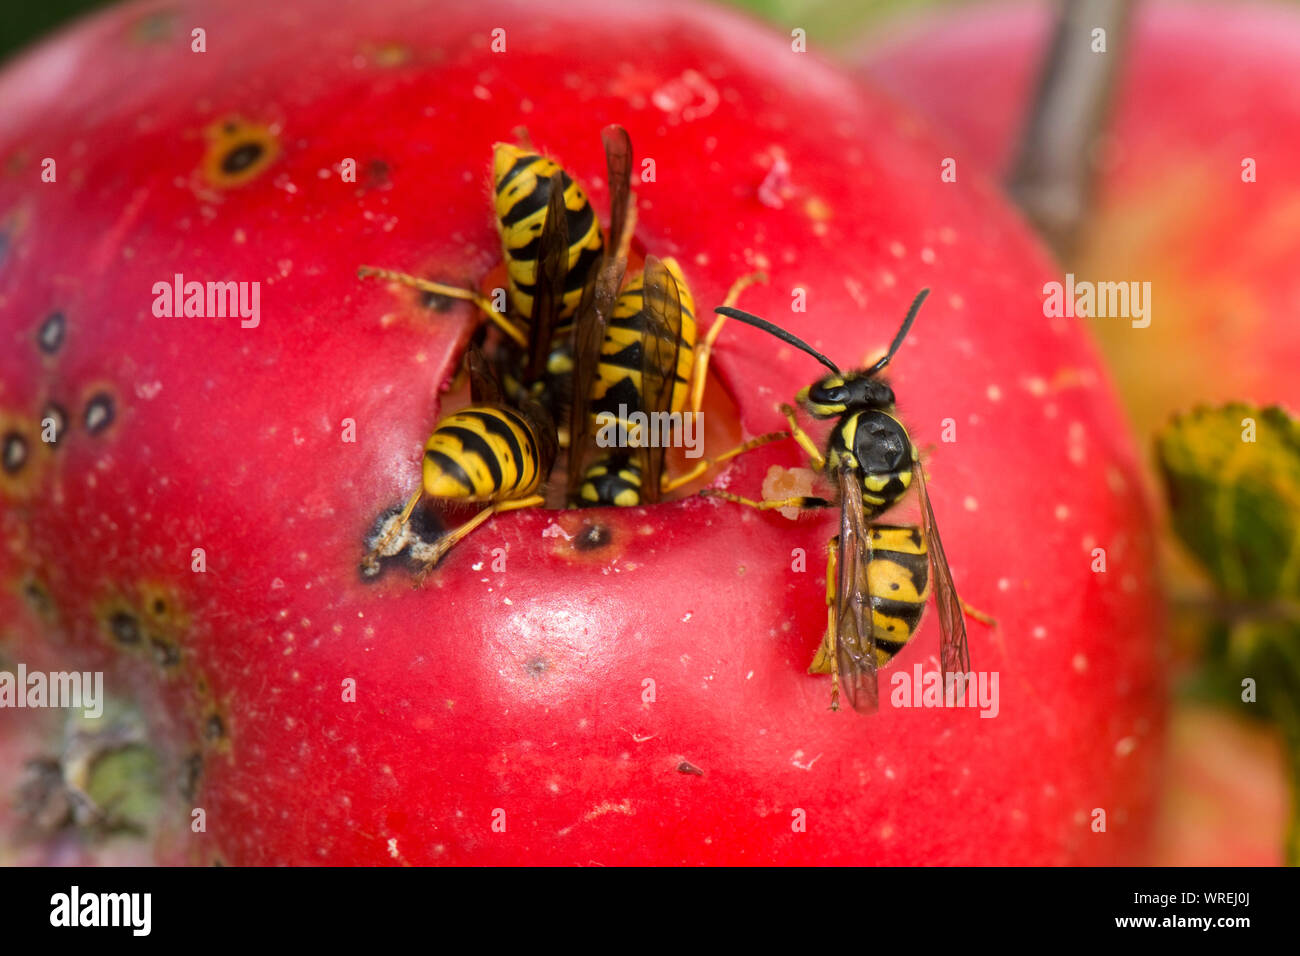 Las avispas comunes (Vespula vulgaris) de alimentación a través de un orificio en la piel de un descubrimiento manzana roja madura en el árbol, Berkshire, Agosto Foto de stock